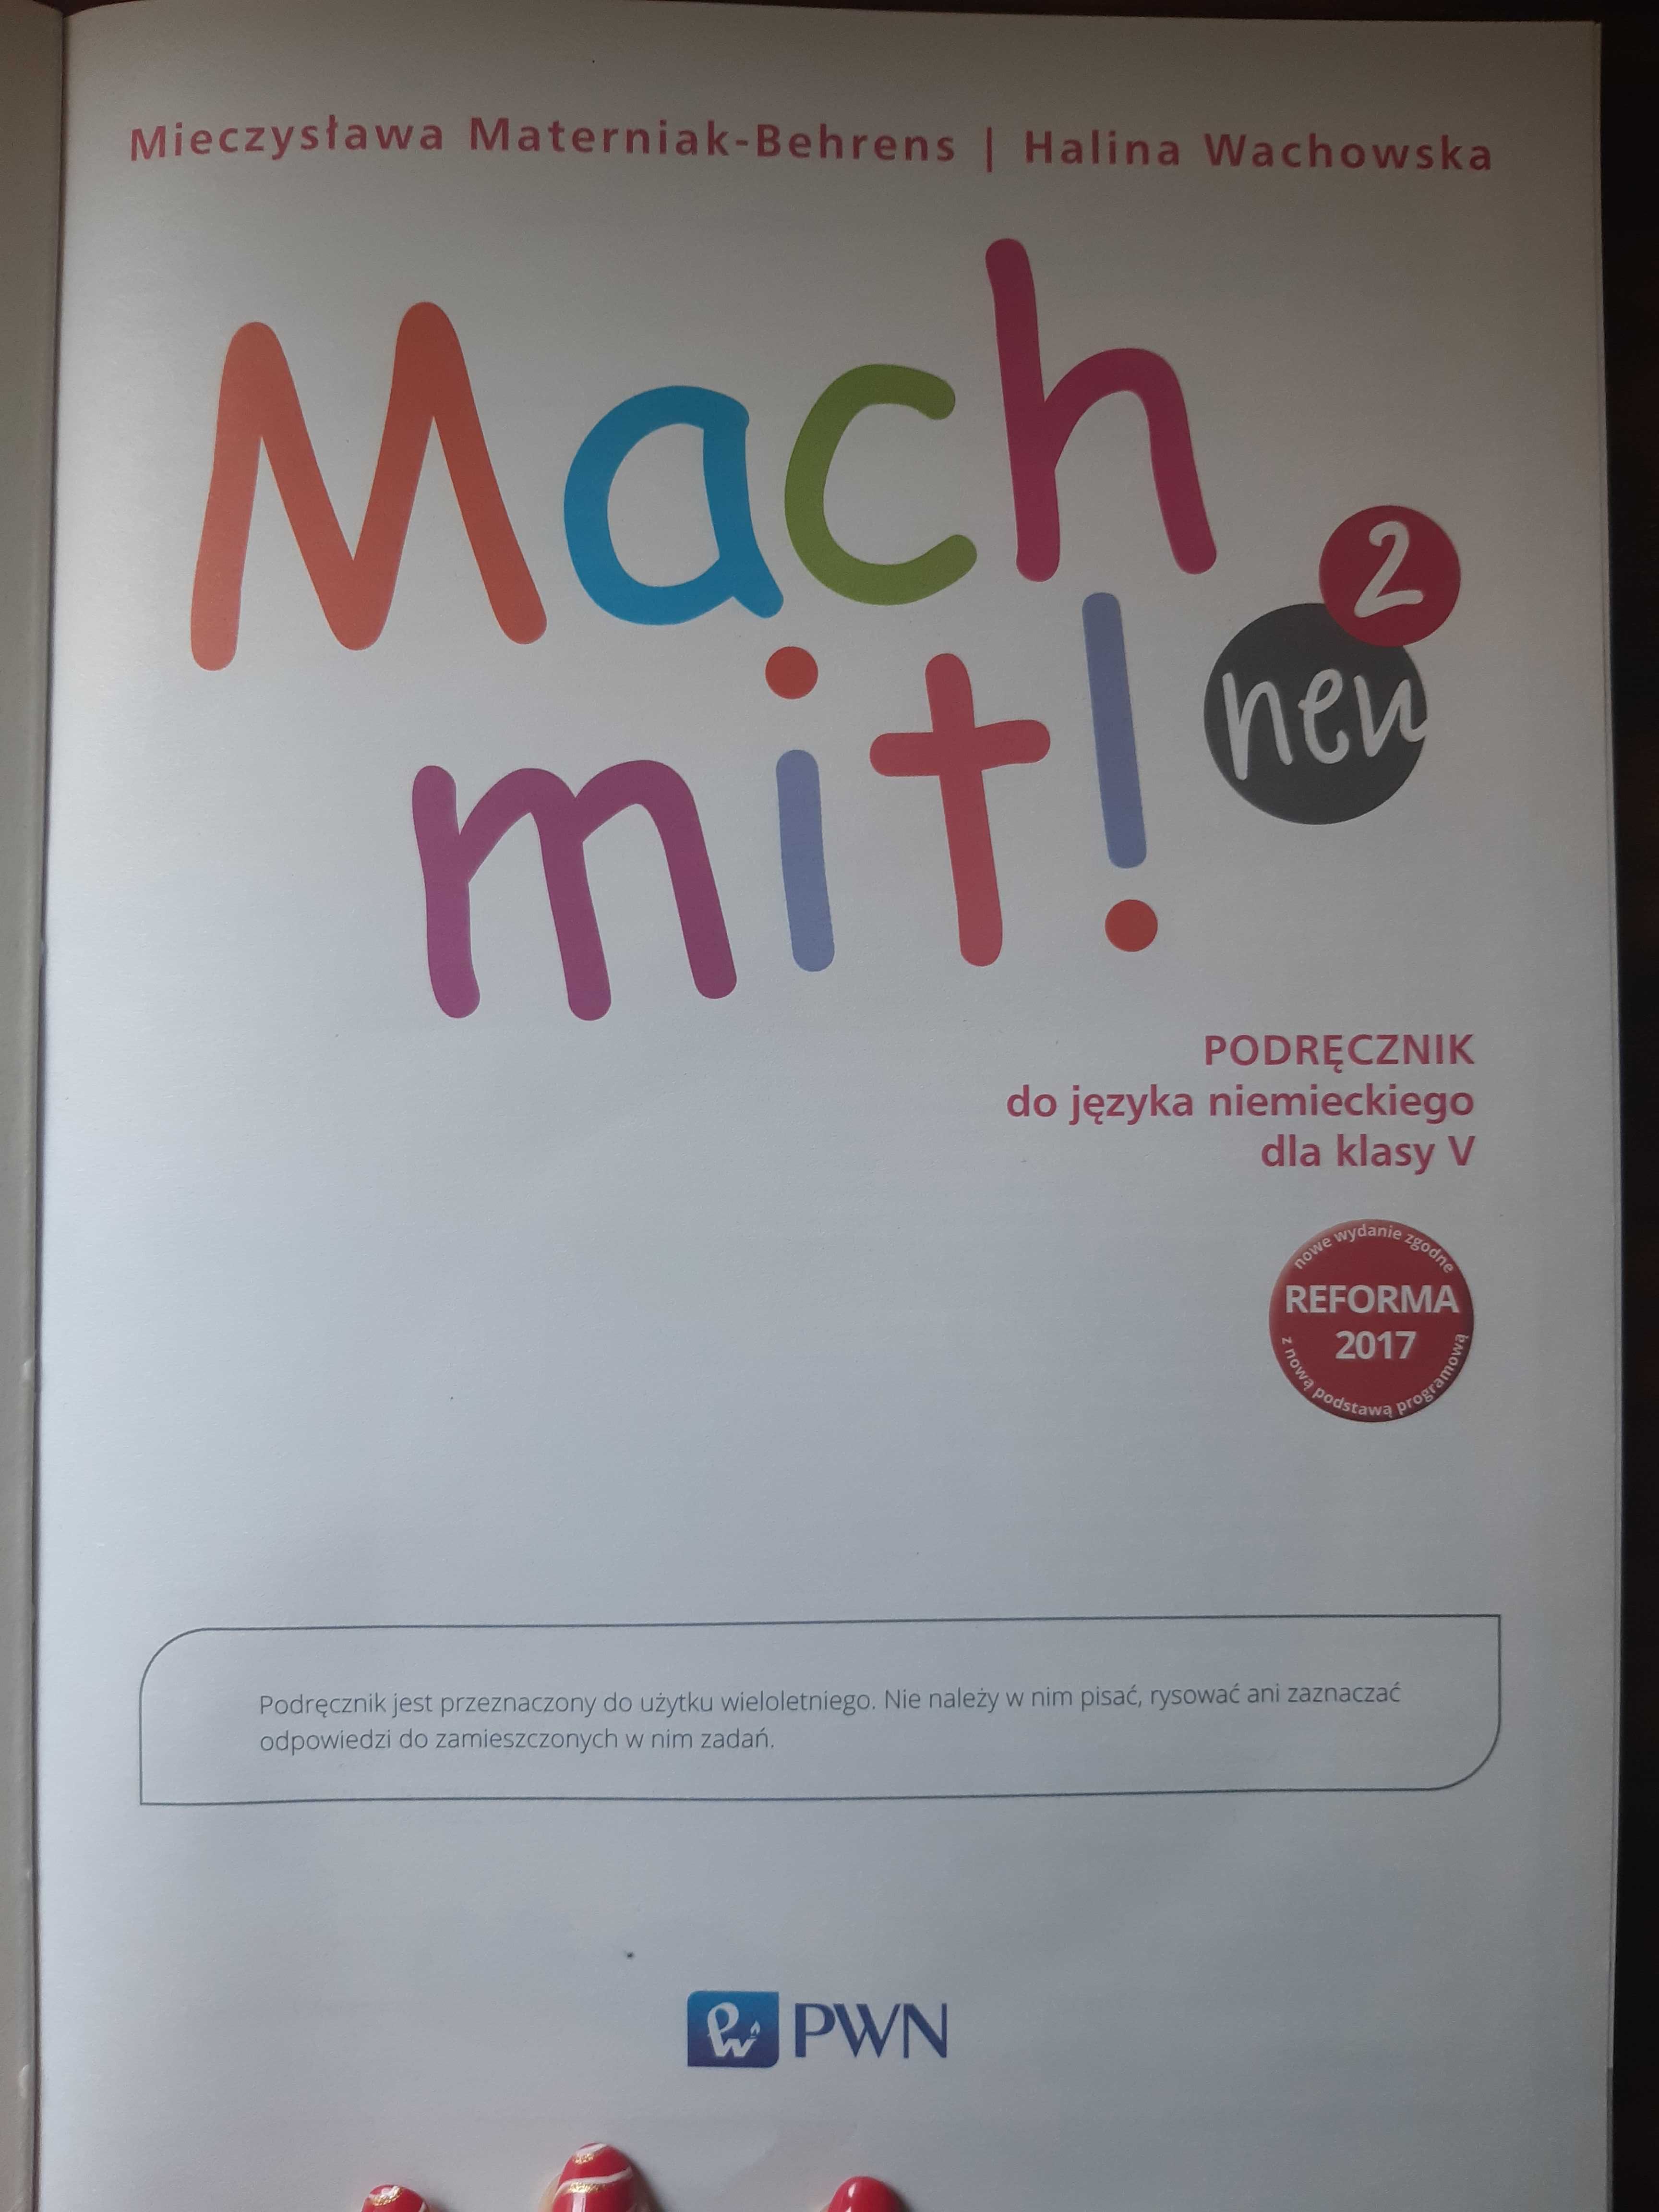 Podręcznik do nauki języka niemieckiego dla klasy 5 szkoły podstawowej